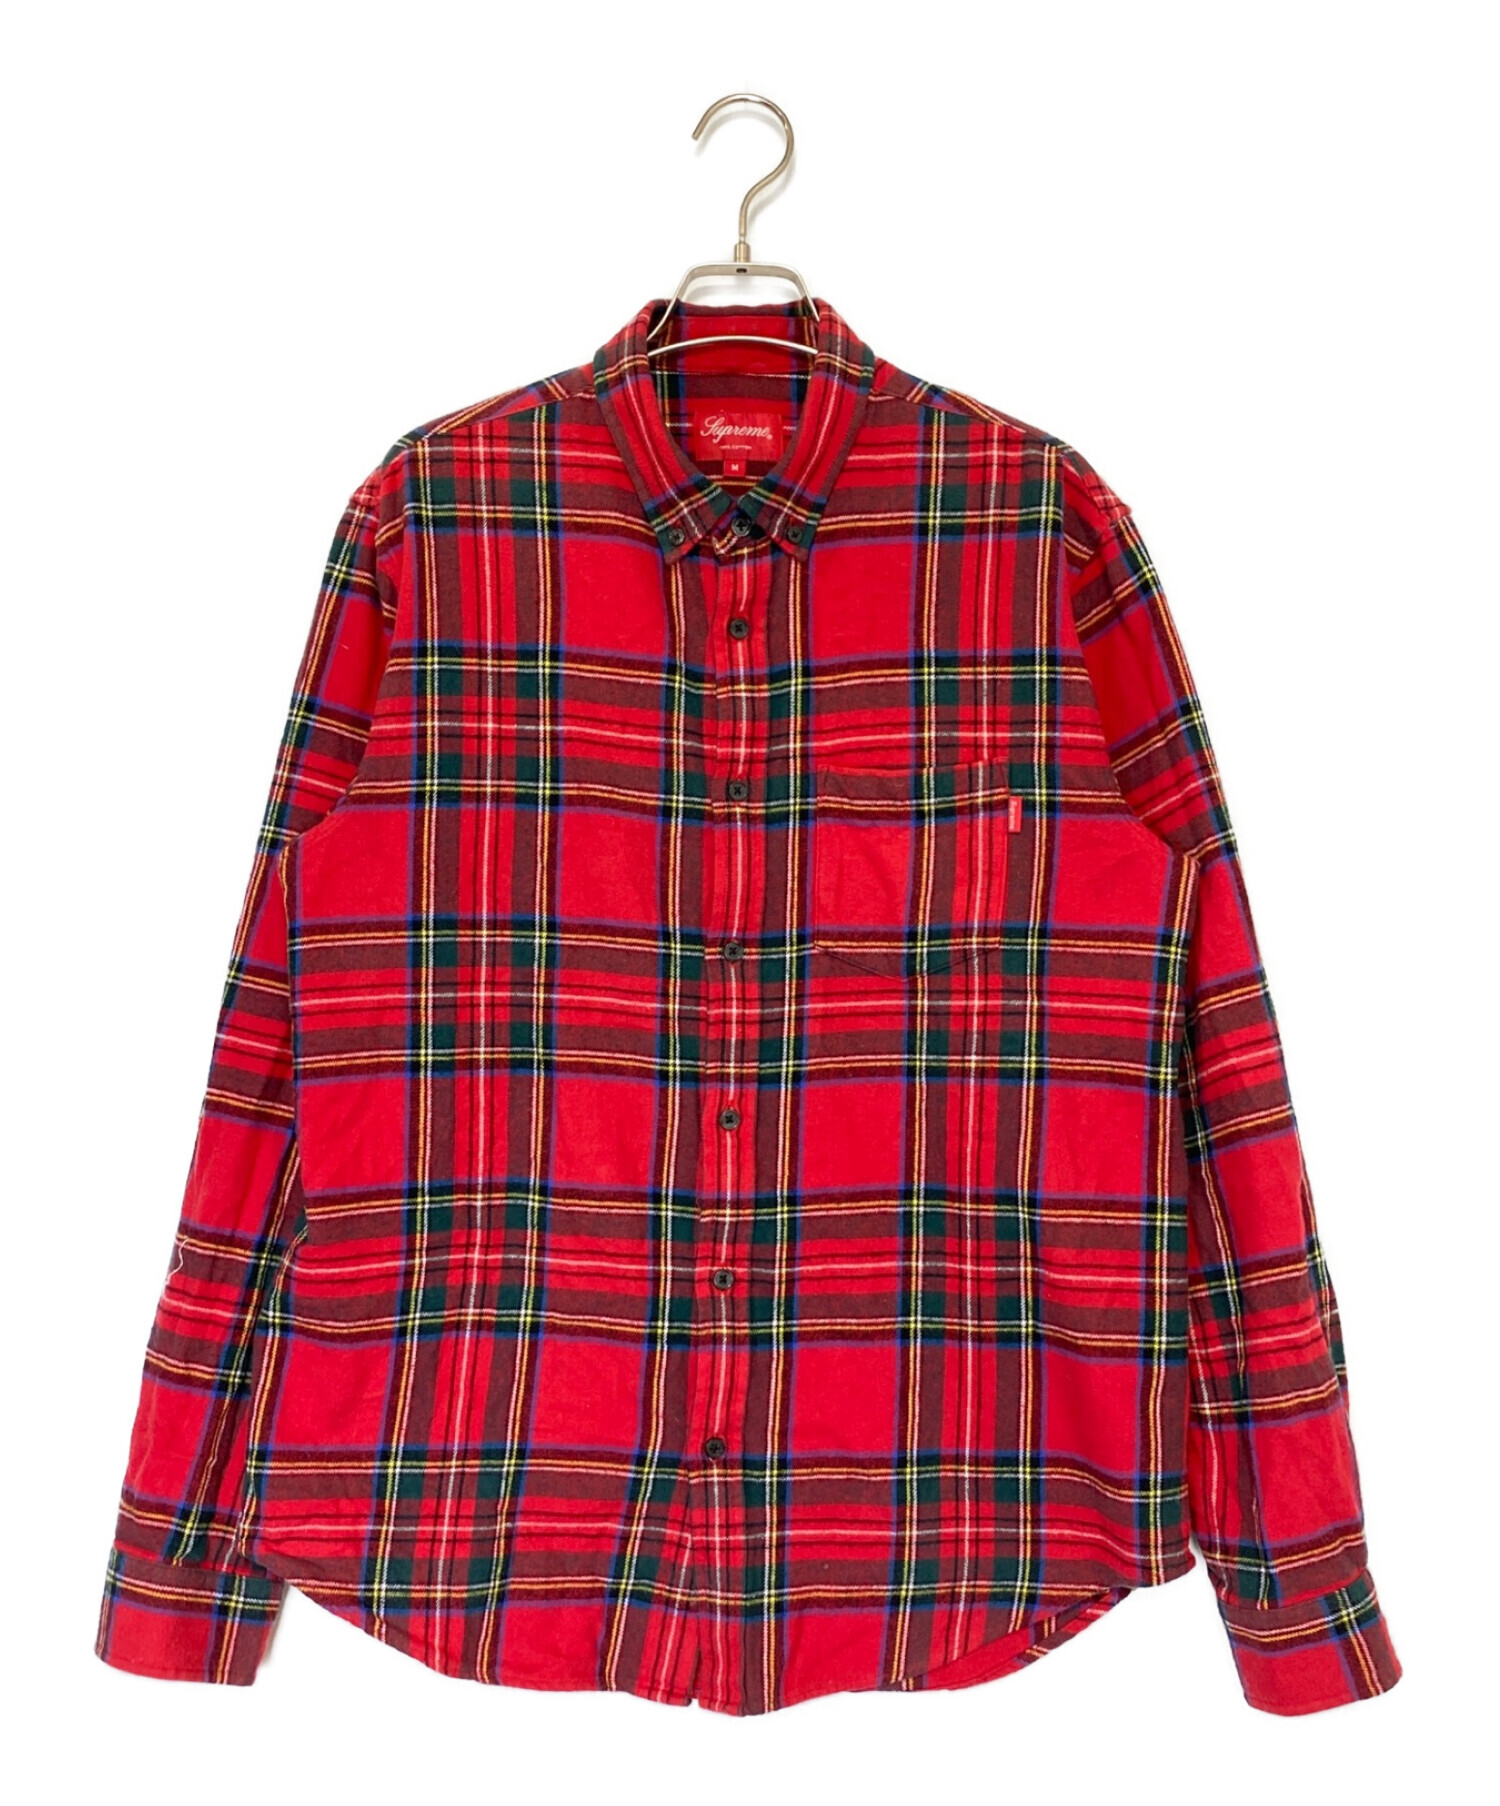 【新品】 supreme tartan flannel shirt Mサイズ